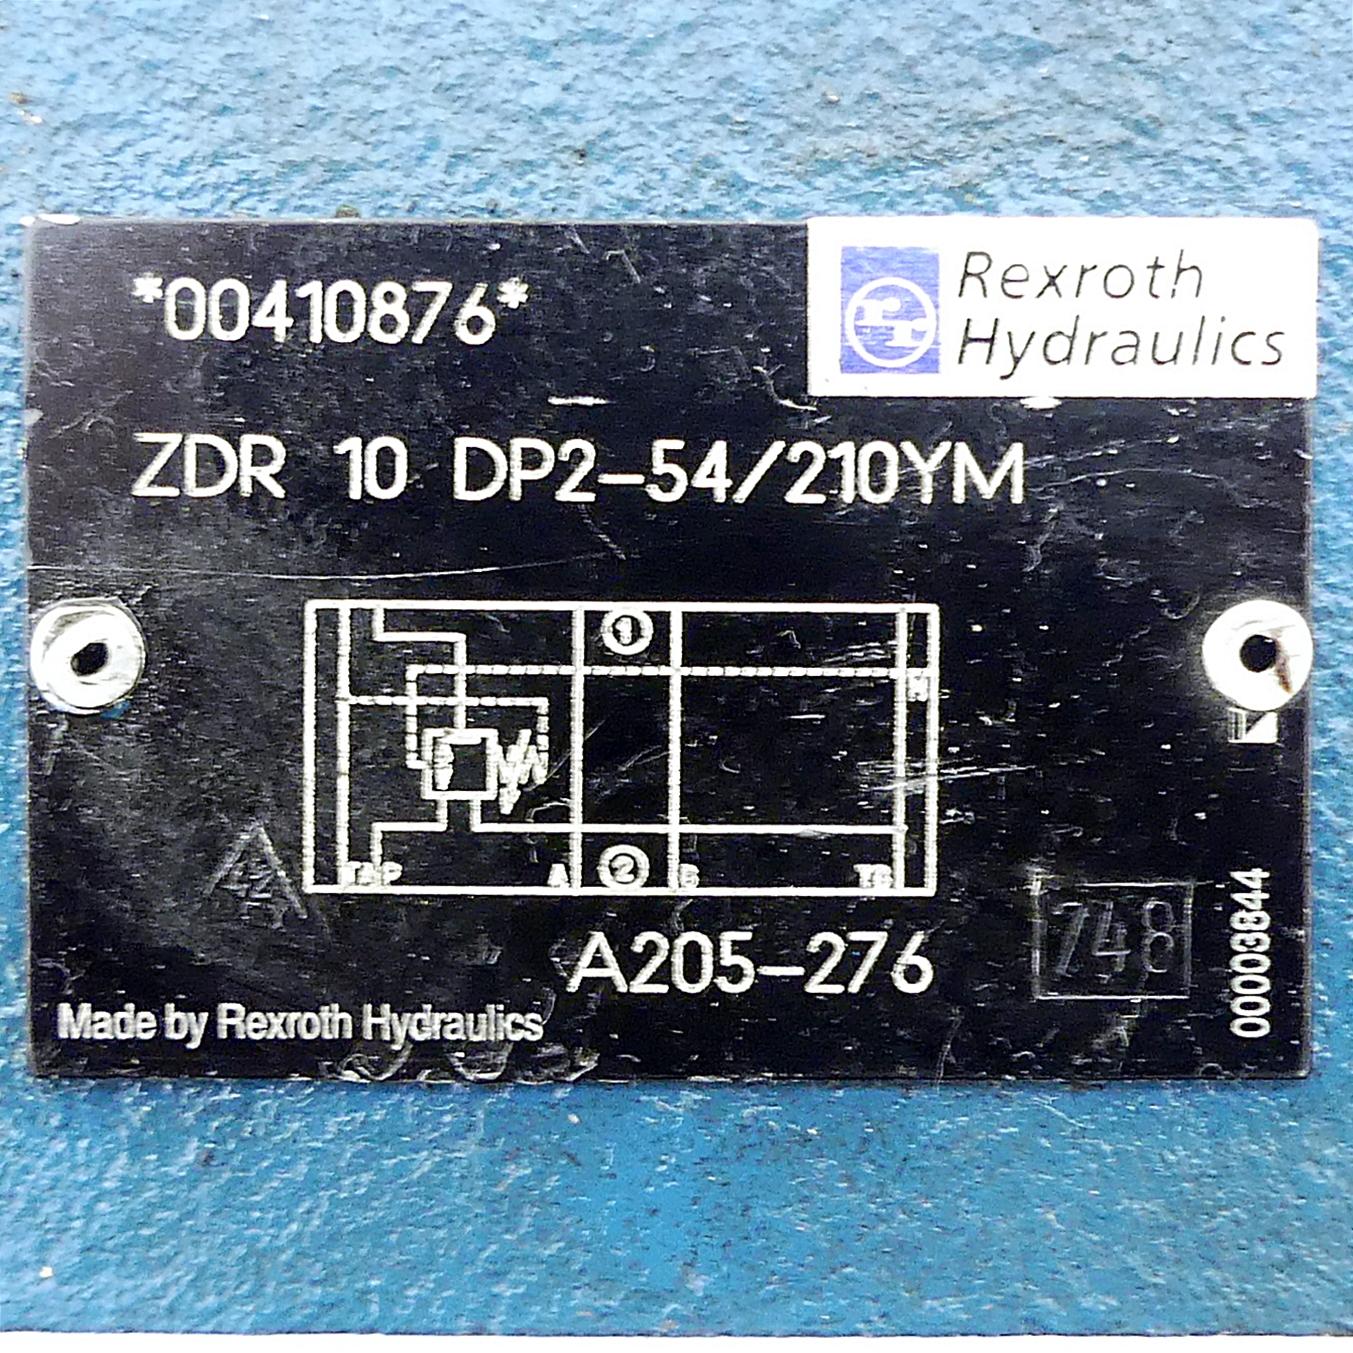 Produktfoto 2 von REXROTH Druckreduzierventil ZDR 10 DP2-54/210YM